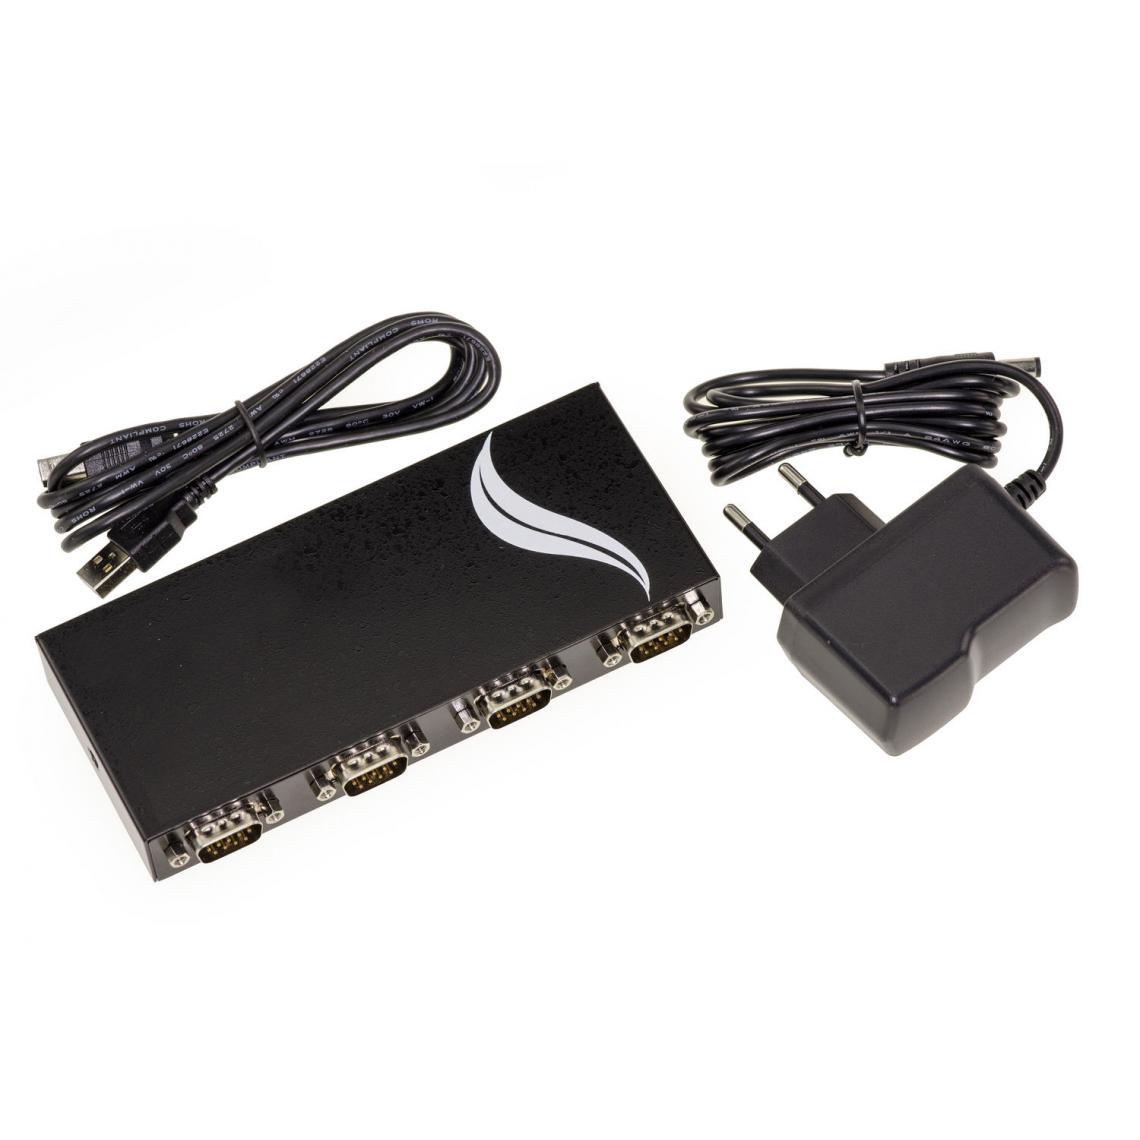 Kalea-Informatique - Convertisseur USB vers 4 Ports RS232 - BOITIER Metal - Interface RS-232 par fiche DB9 - Chipset ASIX MOSCHIP MCS7840 - Carte réseau